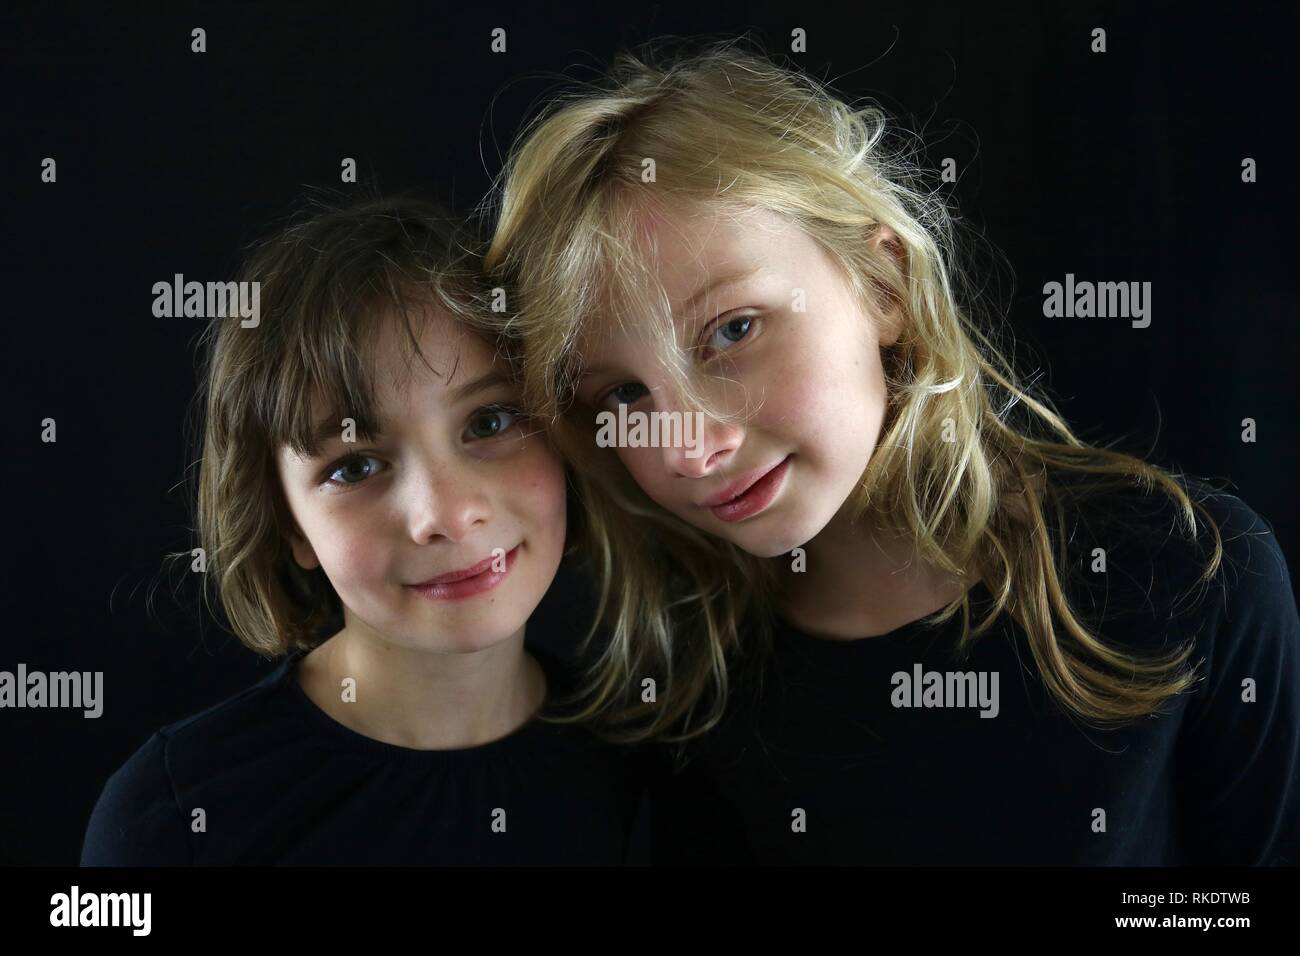 Deux jeunes filles en mettant leurs têtes ensemble pour un portrait sur un fond noir Banque D'Images